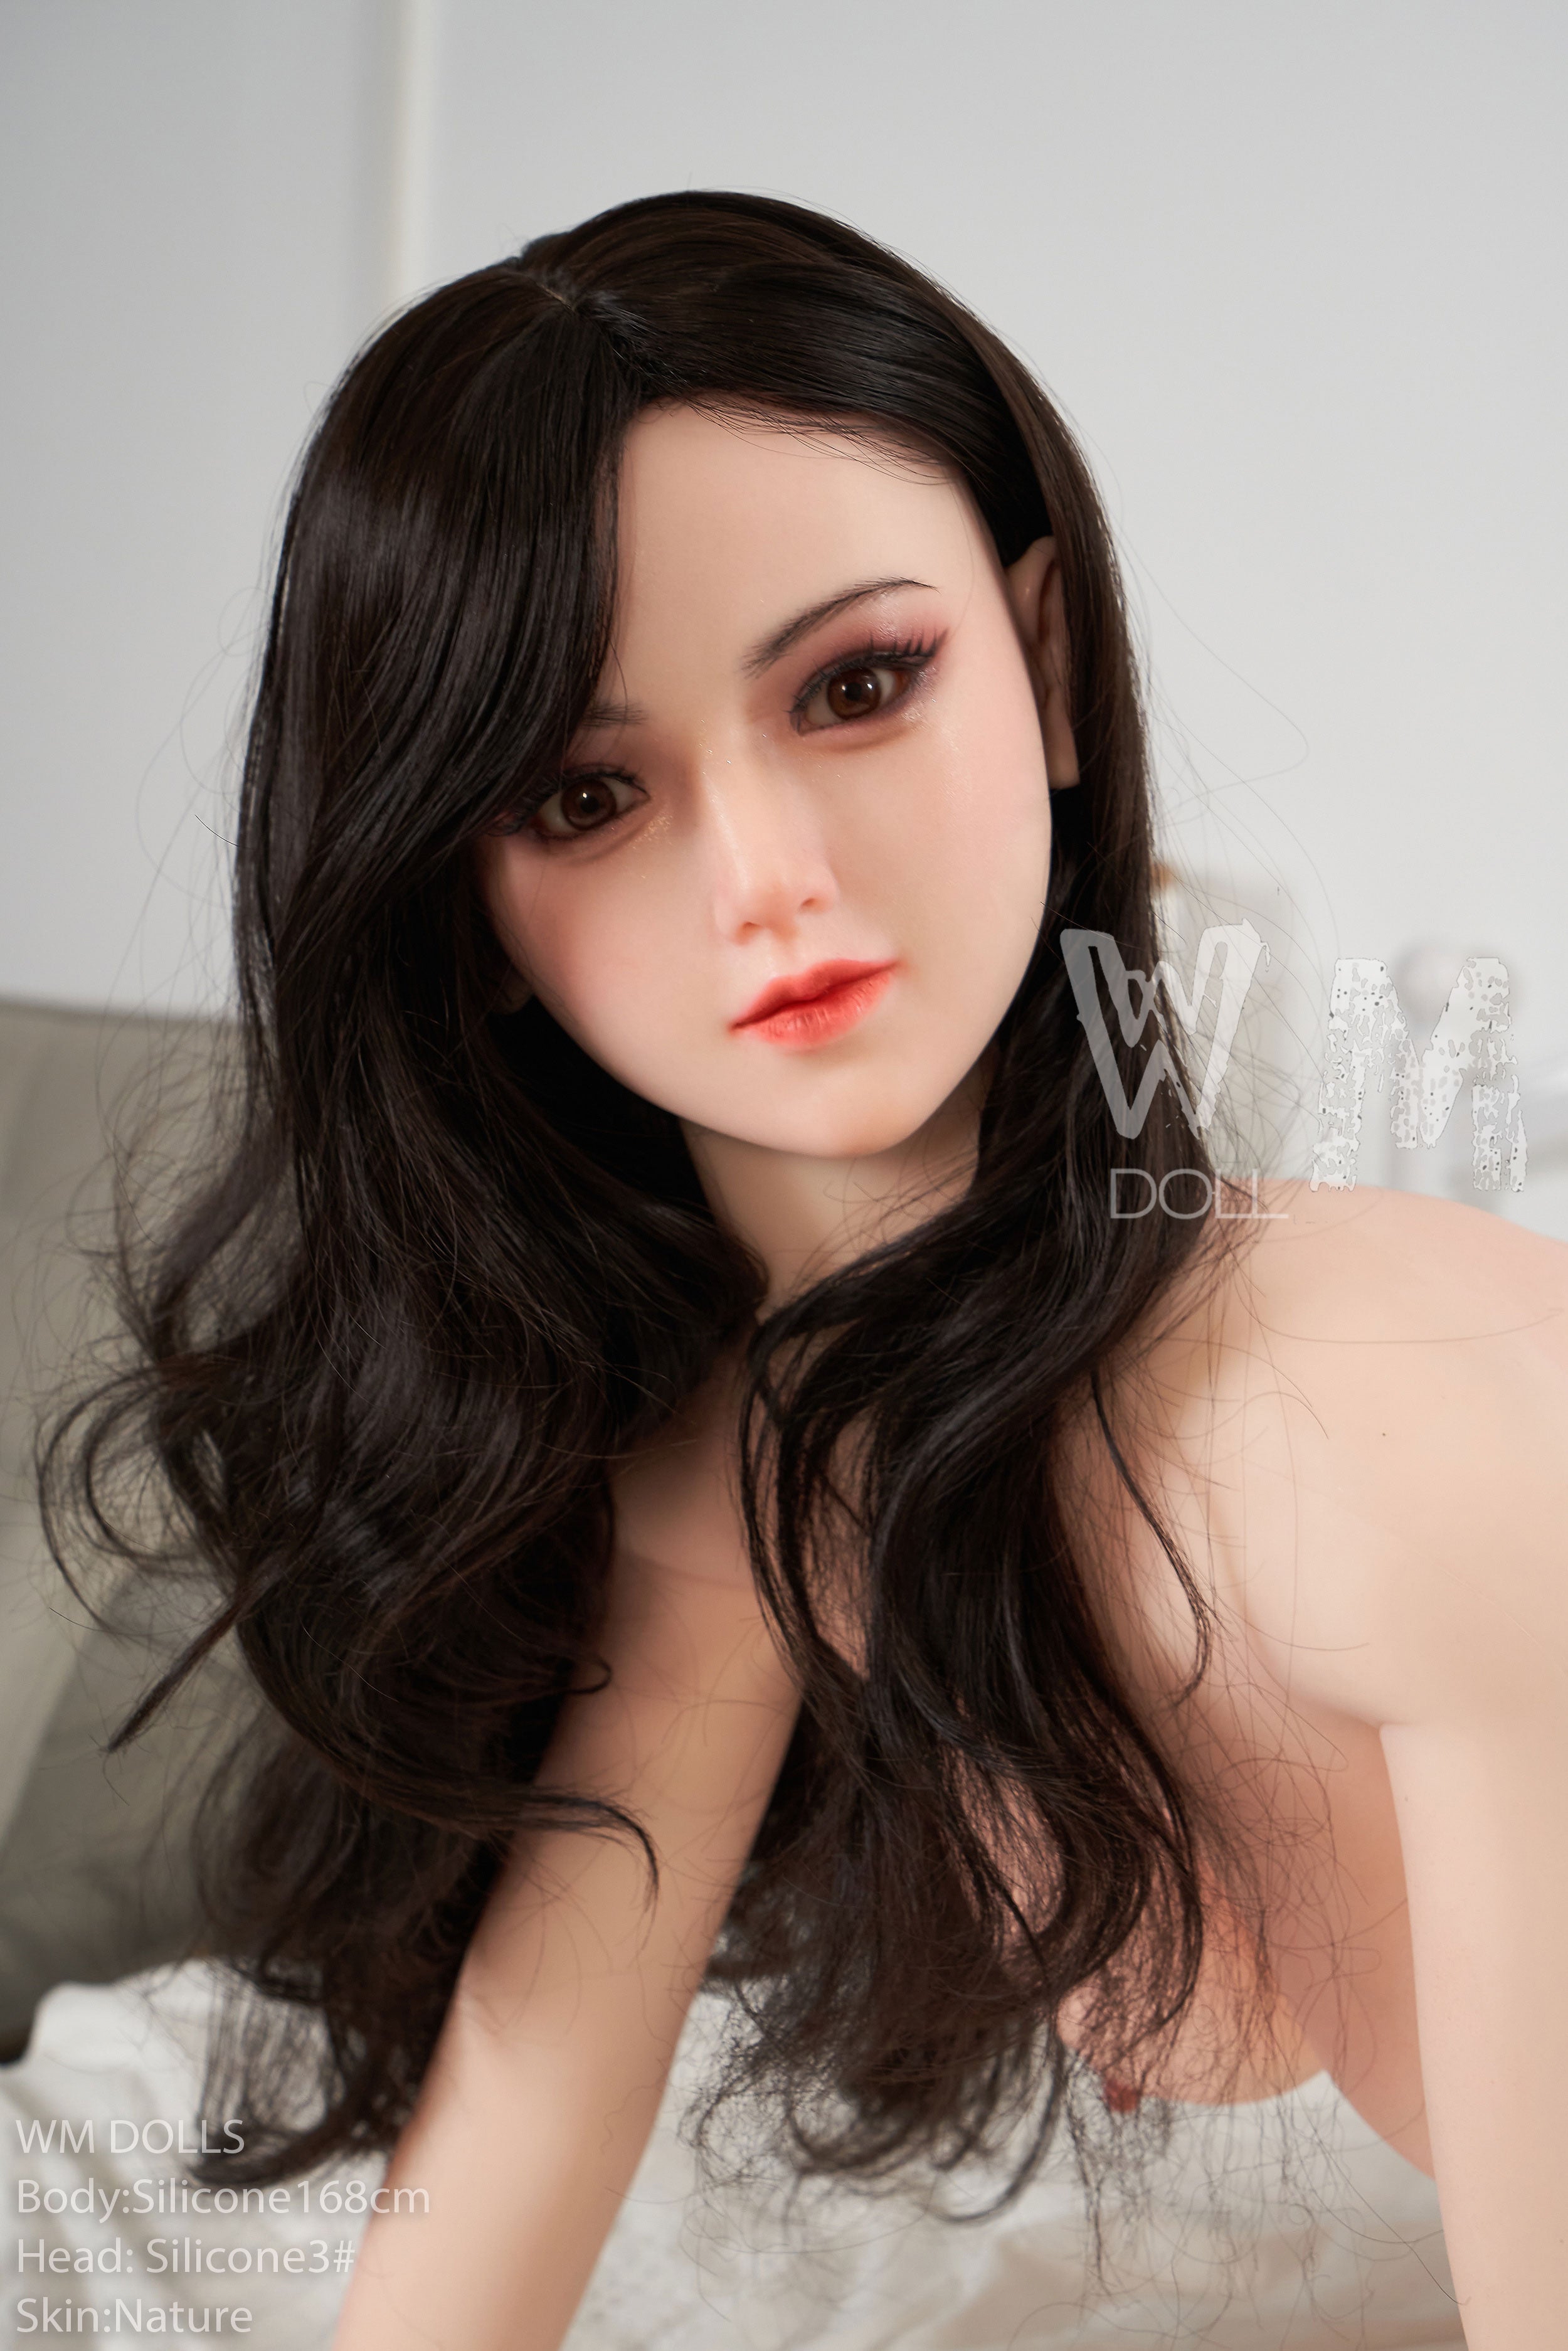 WM Doll 168 cm E Silicone - Charlie | Sex Dolls SG